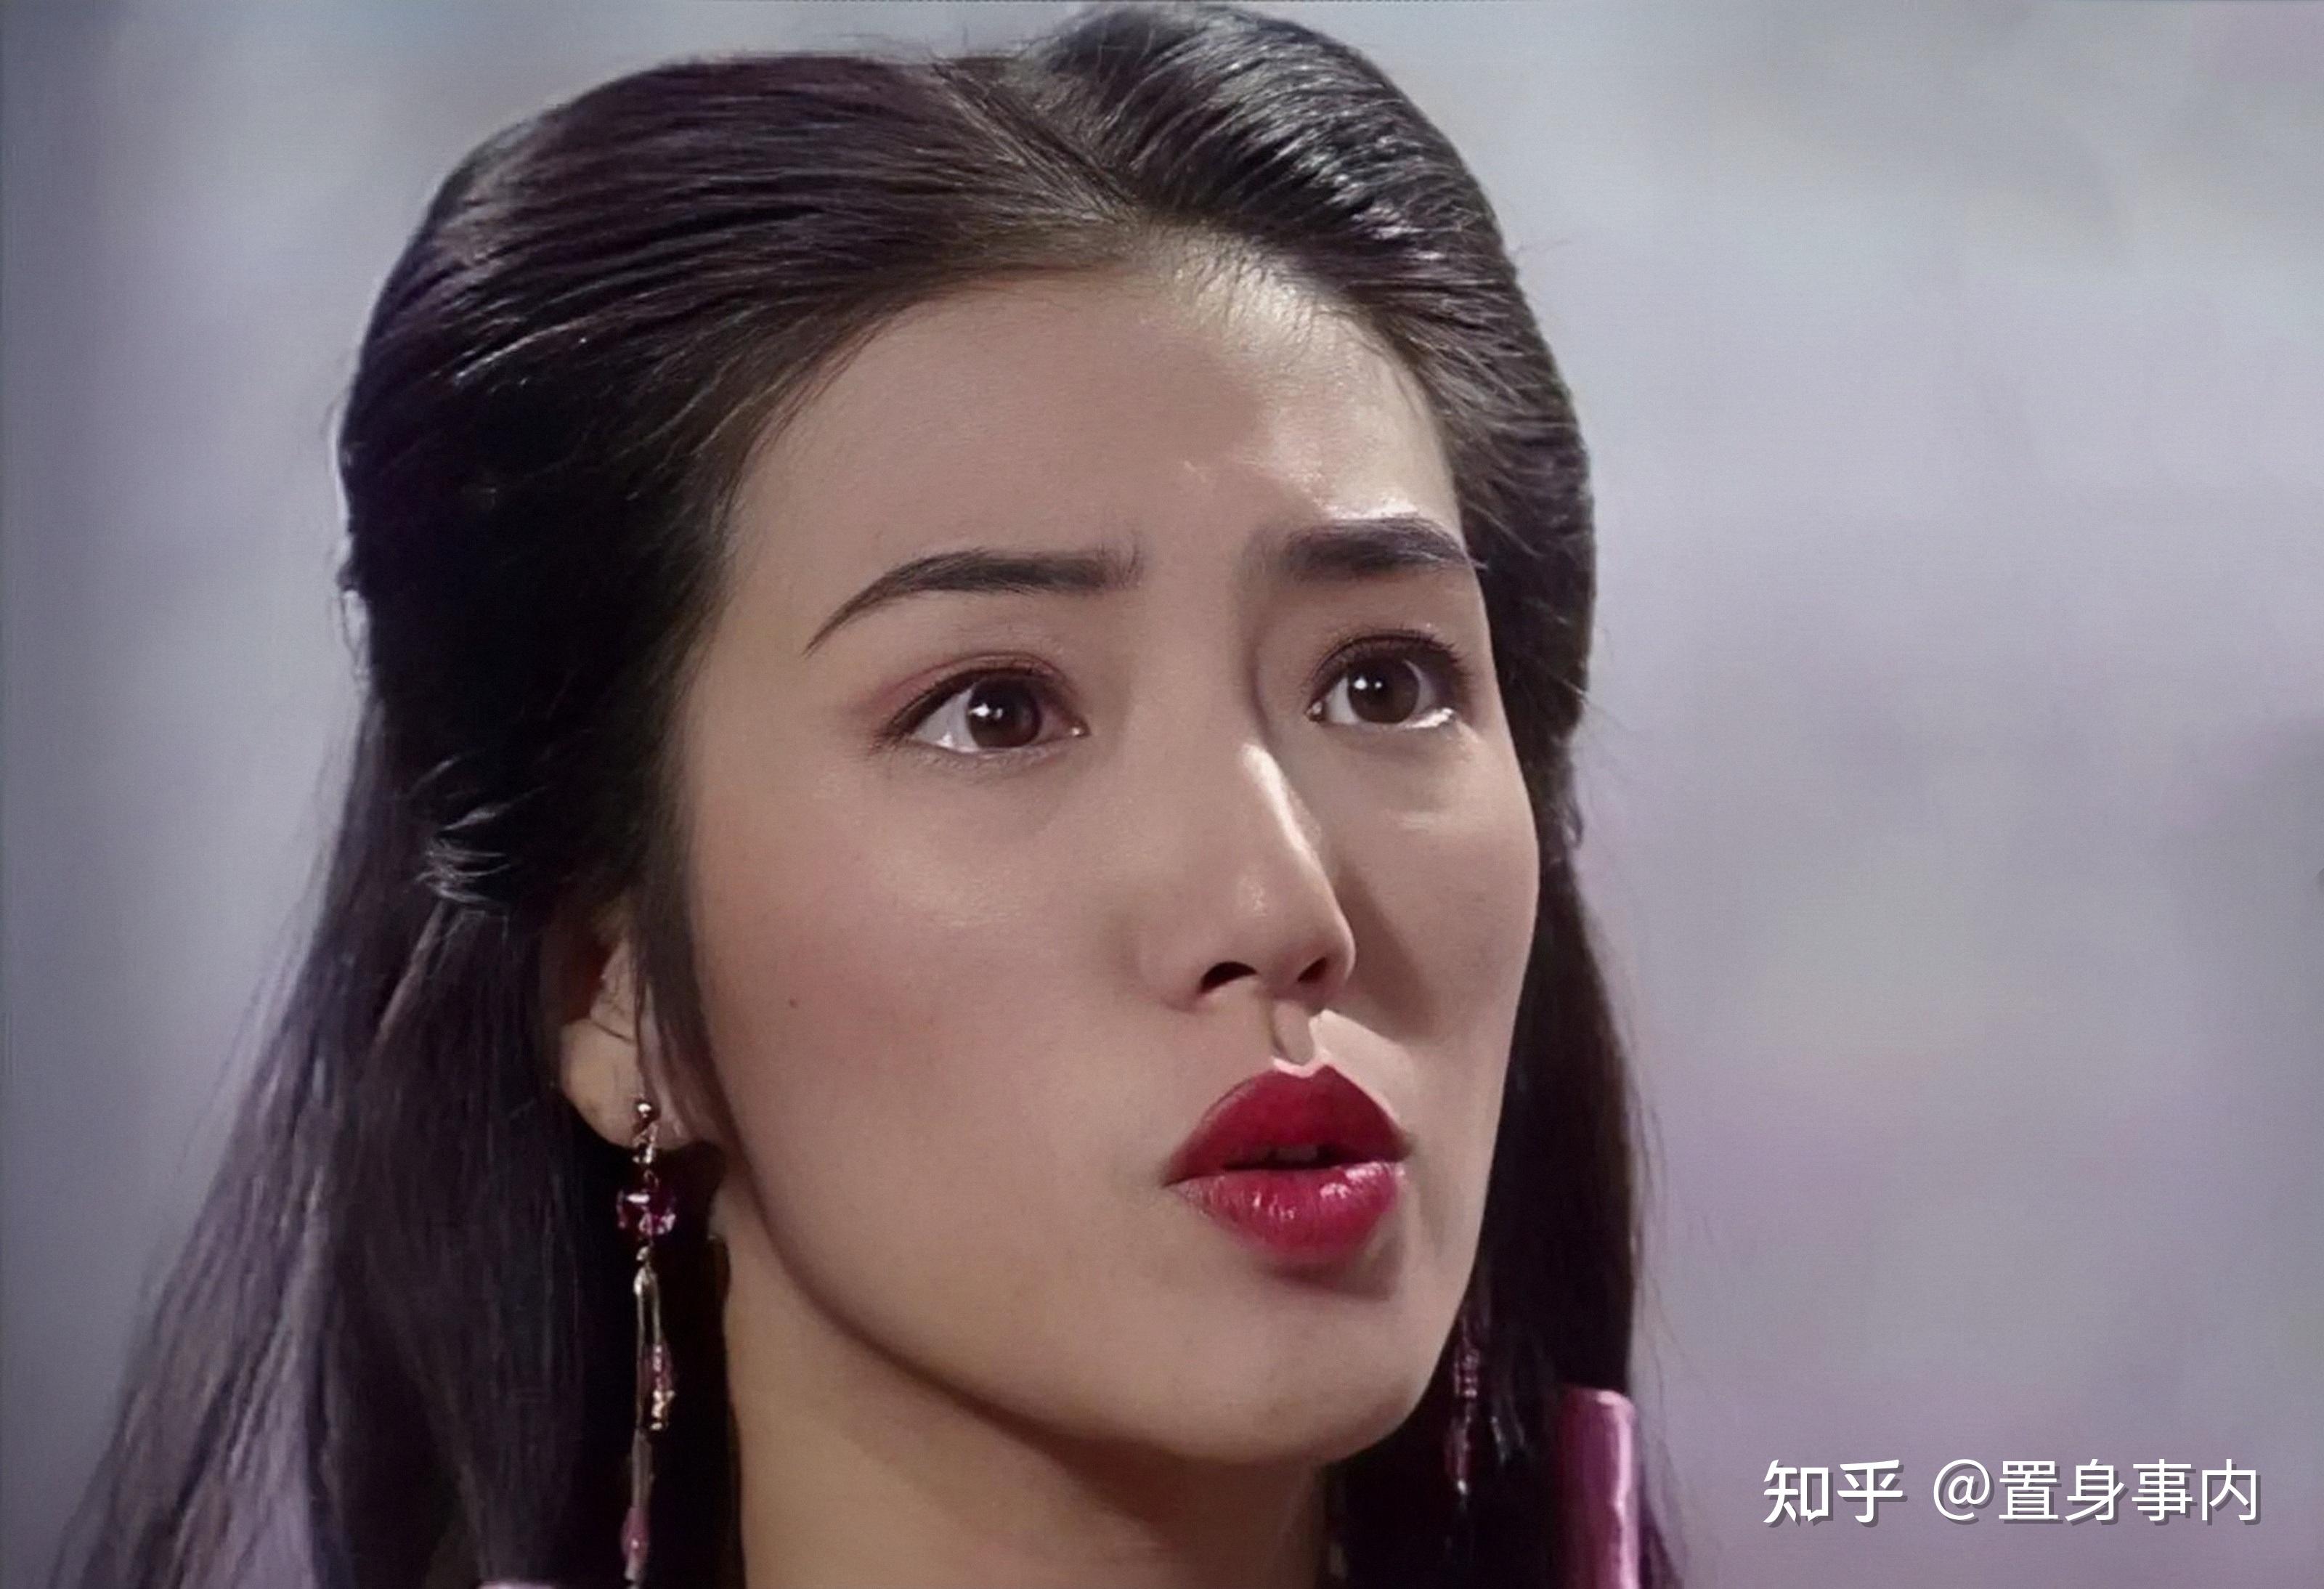 为什么我一直看到老演员倪大红的脸,脑海中就会想起tvb的女星关宝慧